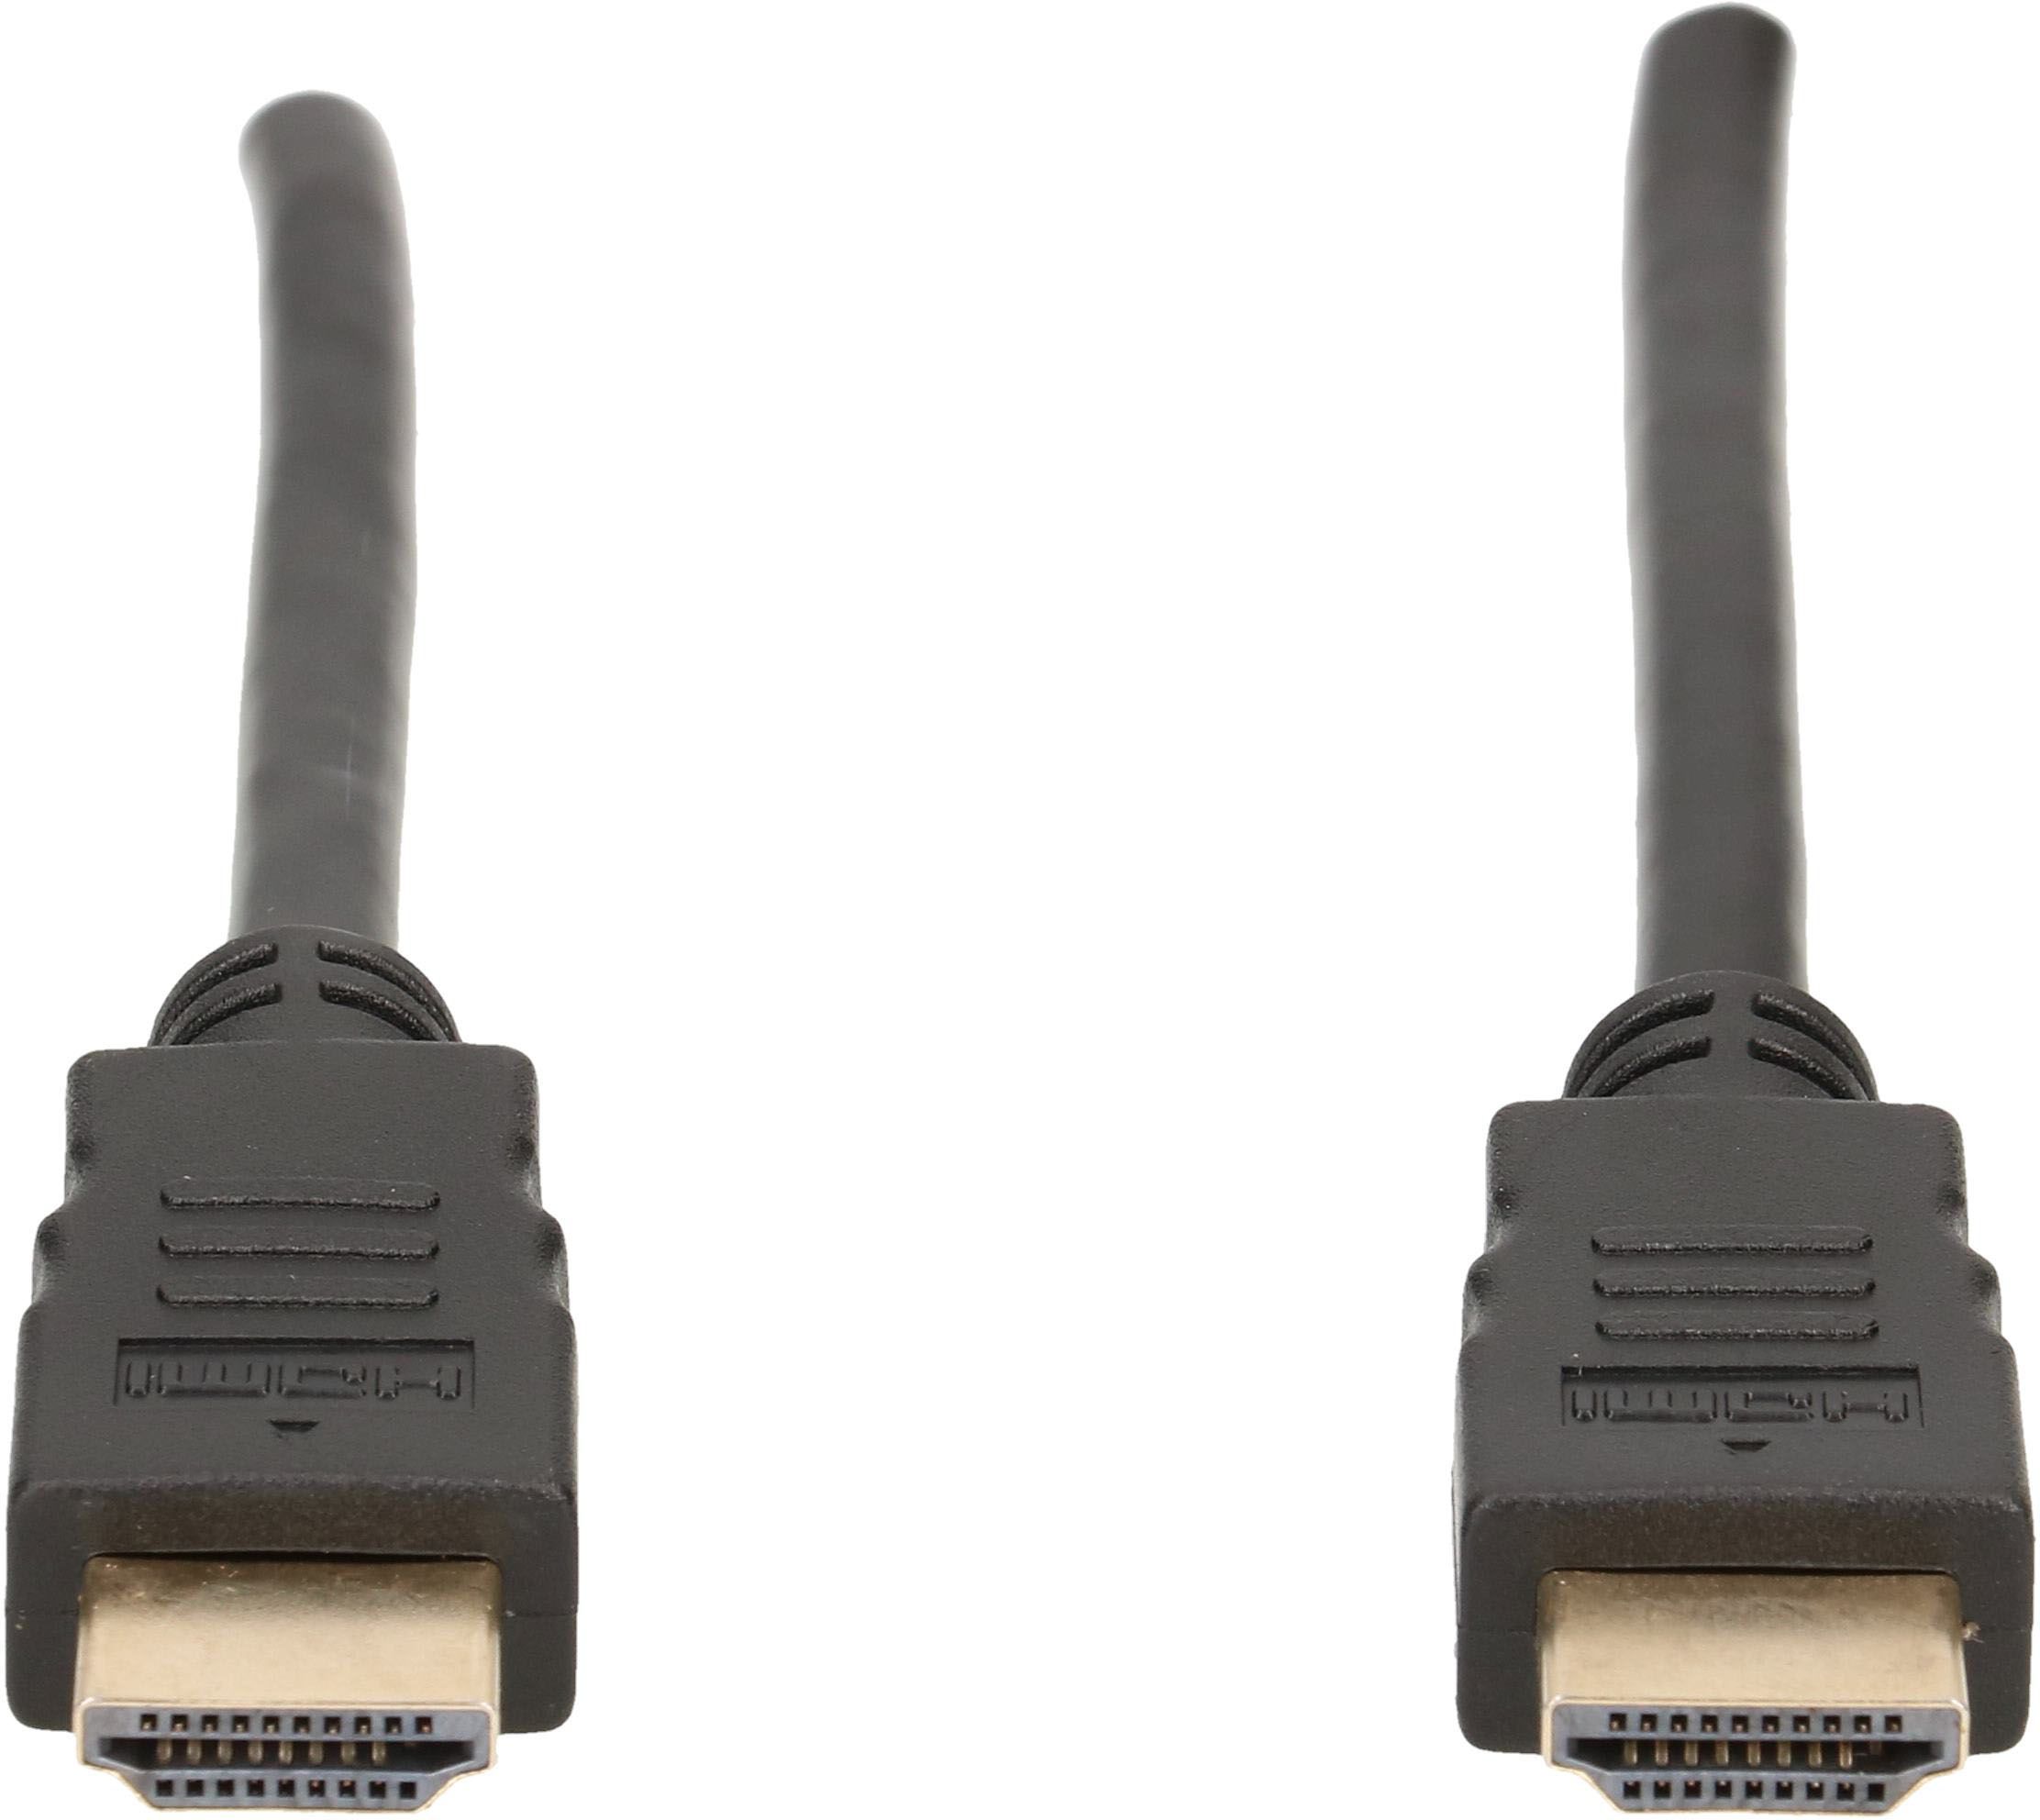 HDMI Kabel 1.5m Schwarz High Speed